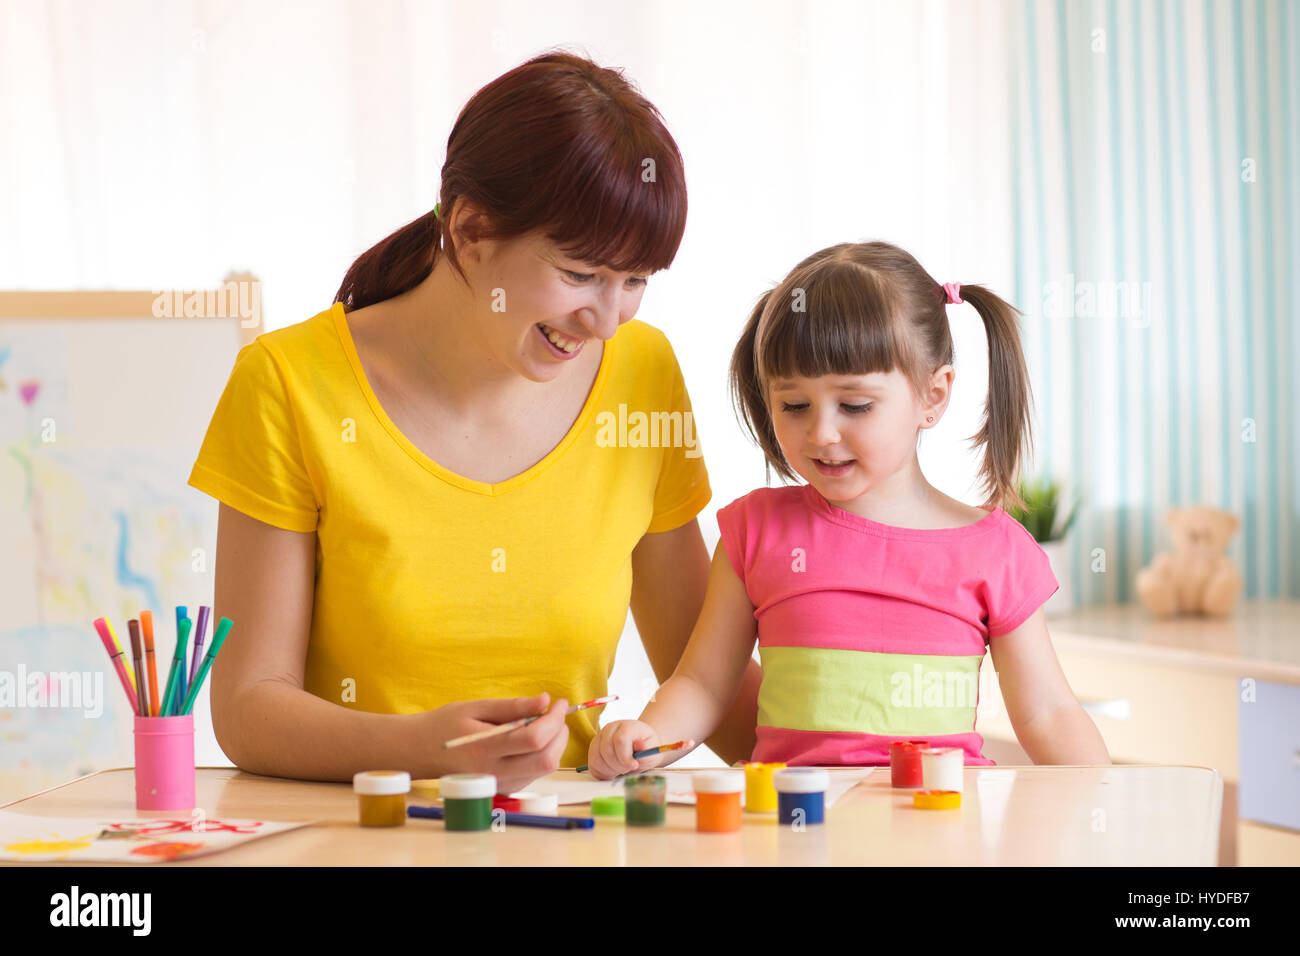 Glückliche Familie Mutter und Kind Tochter malen zusammen. Erwachsene Frau hilft Kind Mädchen. Stockfoto